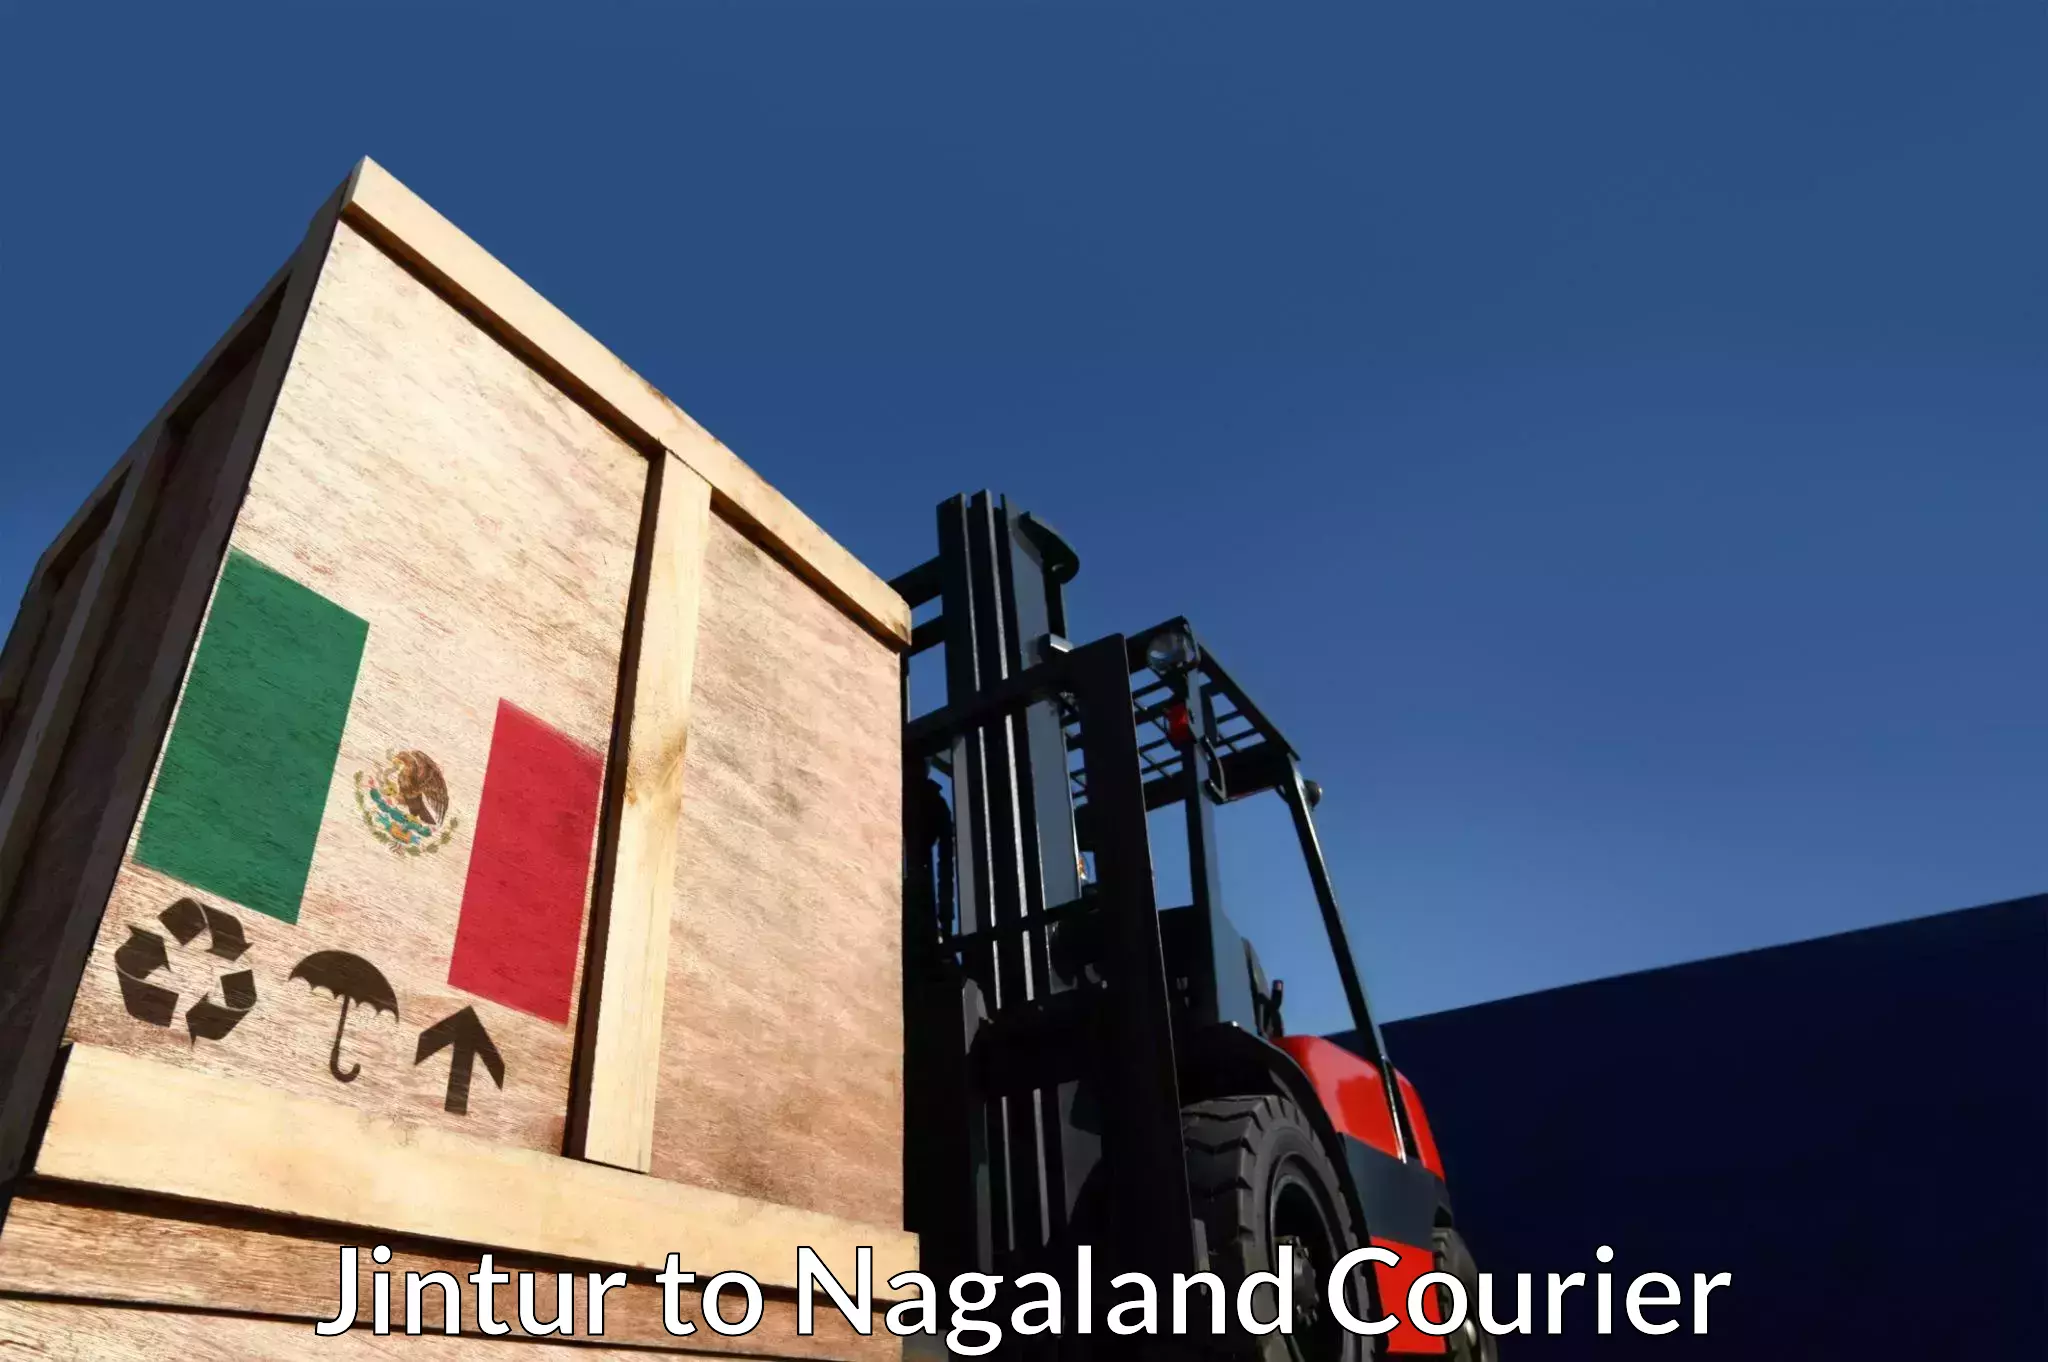 Multi-city courier Jintur to Nagaland